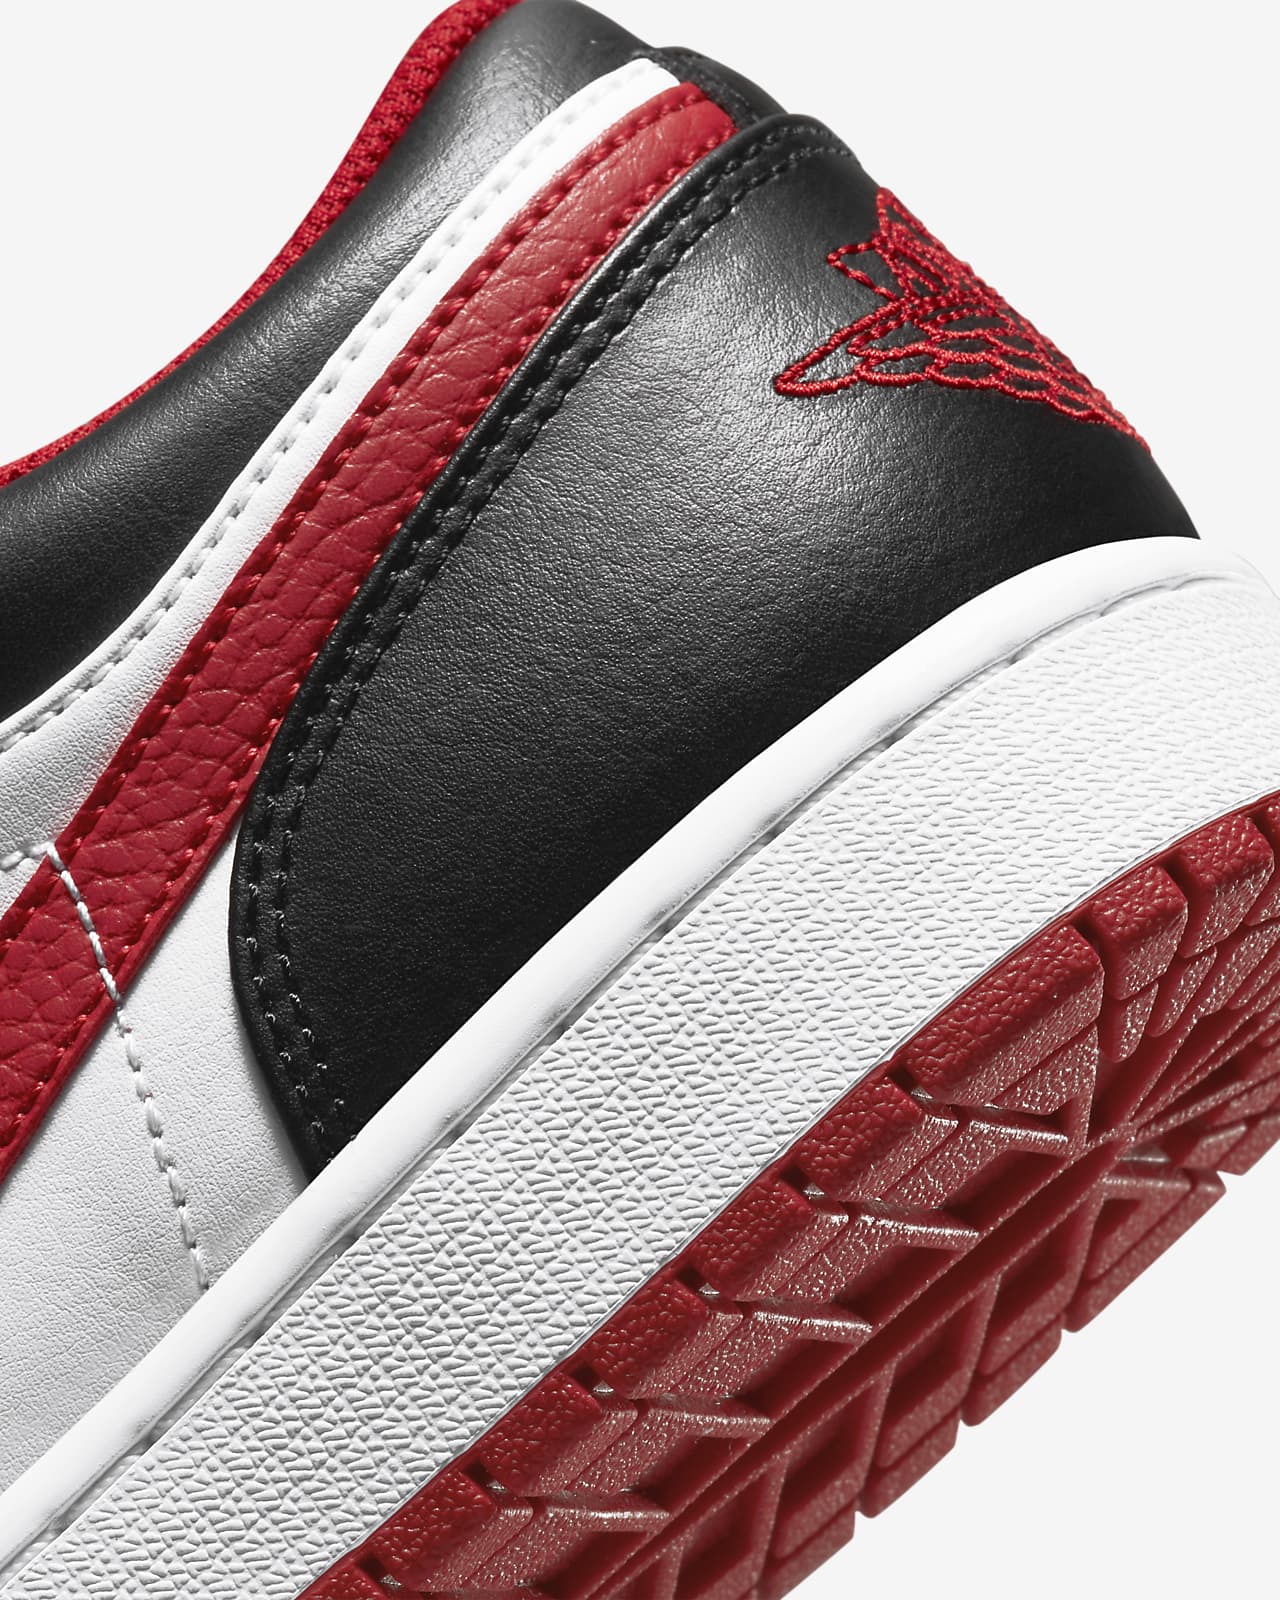 Air Jordan 1 grey and red jordan 1 Low Men's Shoes. Nike.com